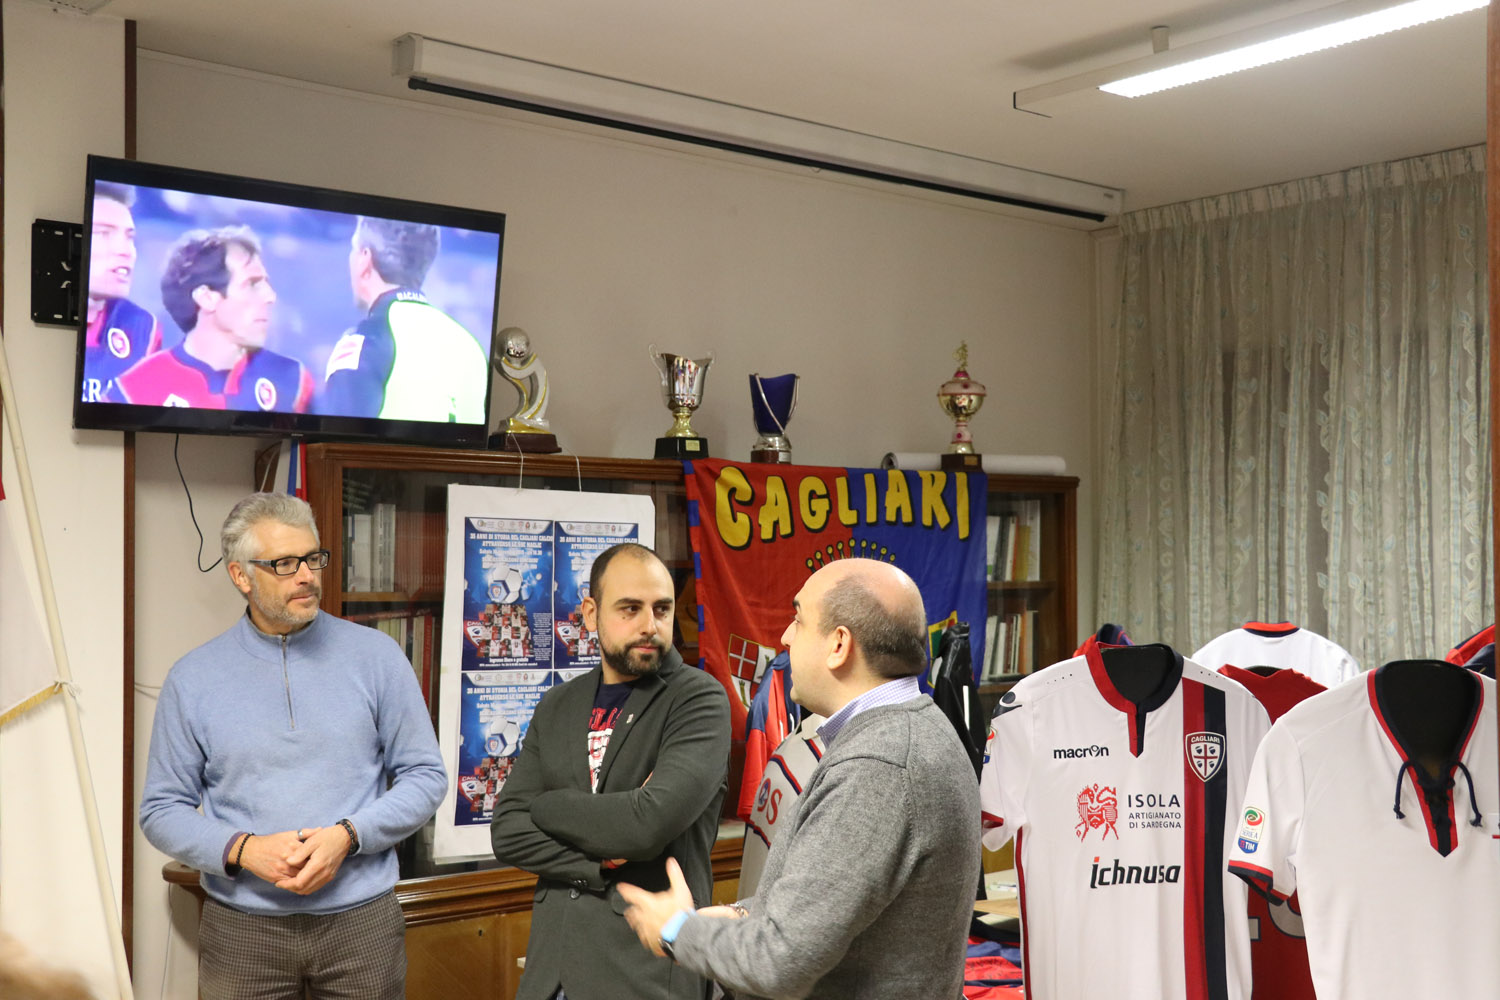 2019-11-16 Mostra "35 anni di storia del Cagliari Calcio attraverso le sue maglie"